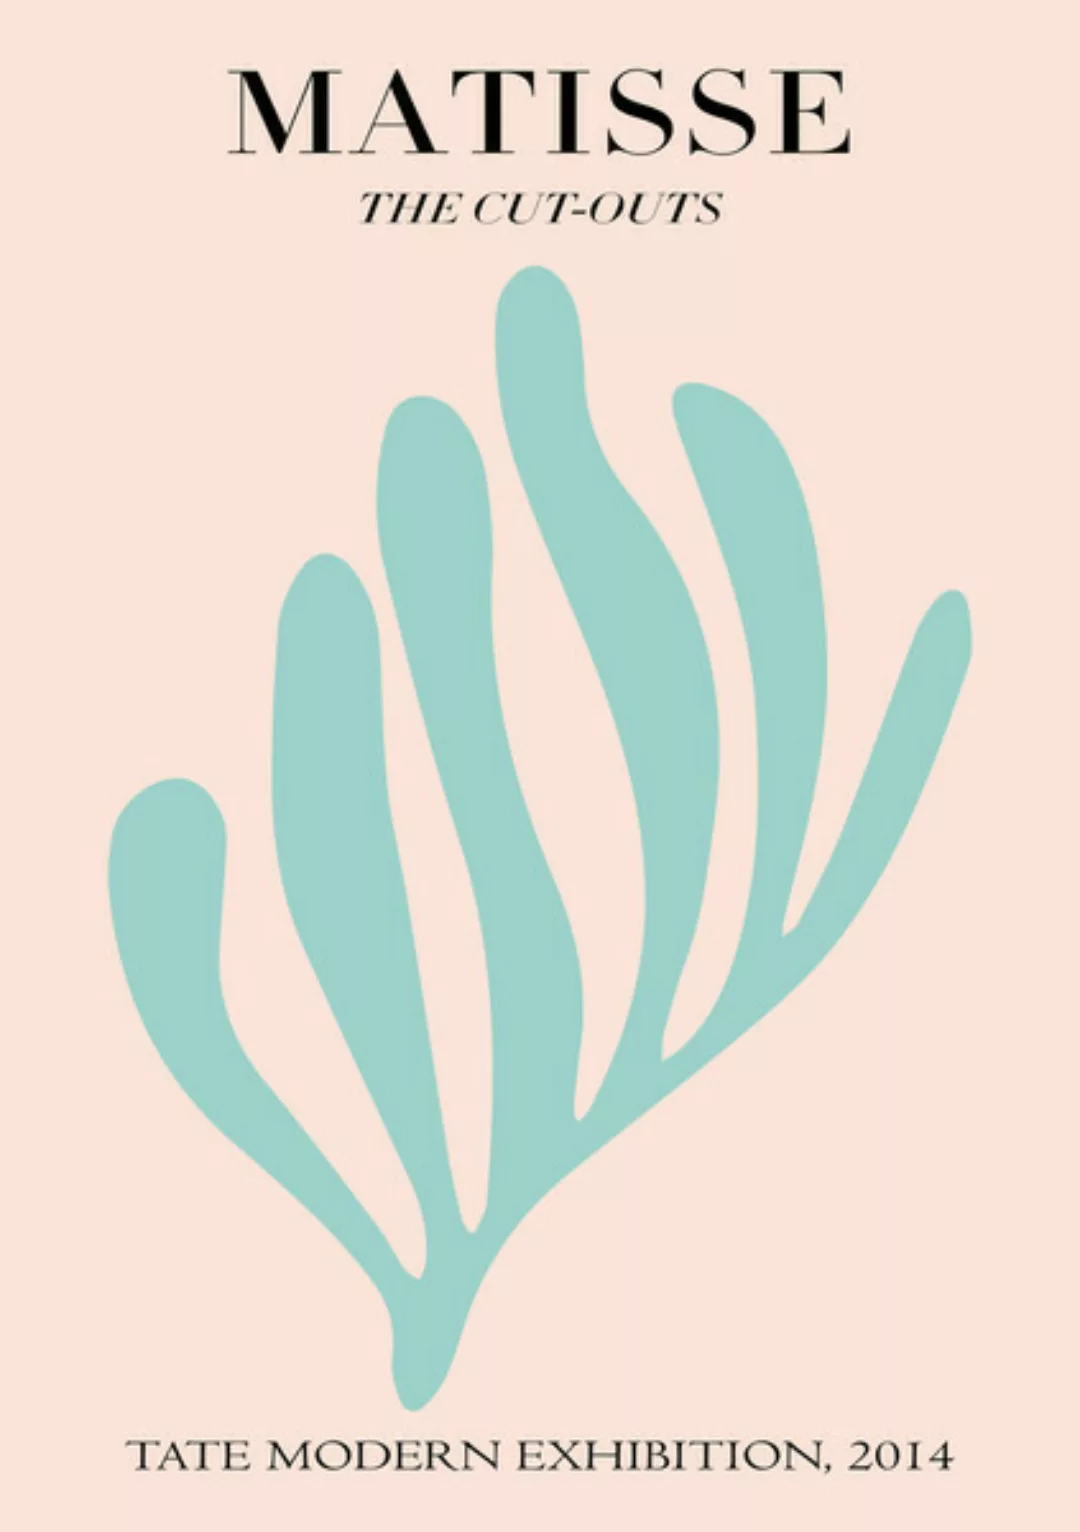 Poster / Leinwandbild - Matisse – Botanisches Design Rosa Und Türkis günstig online kaufen